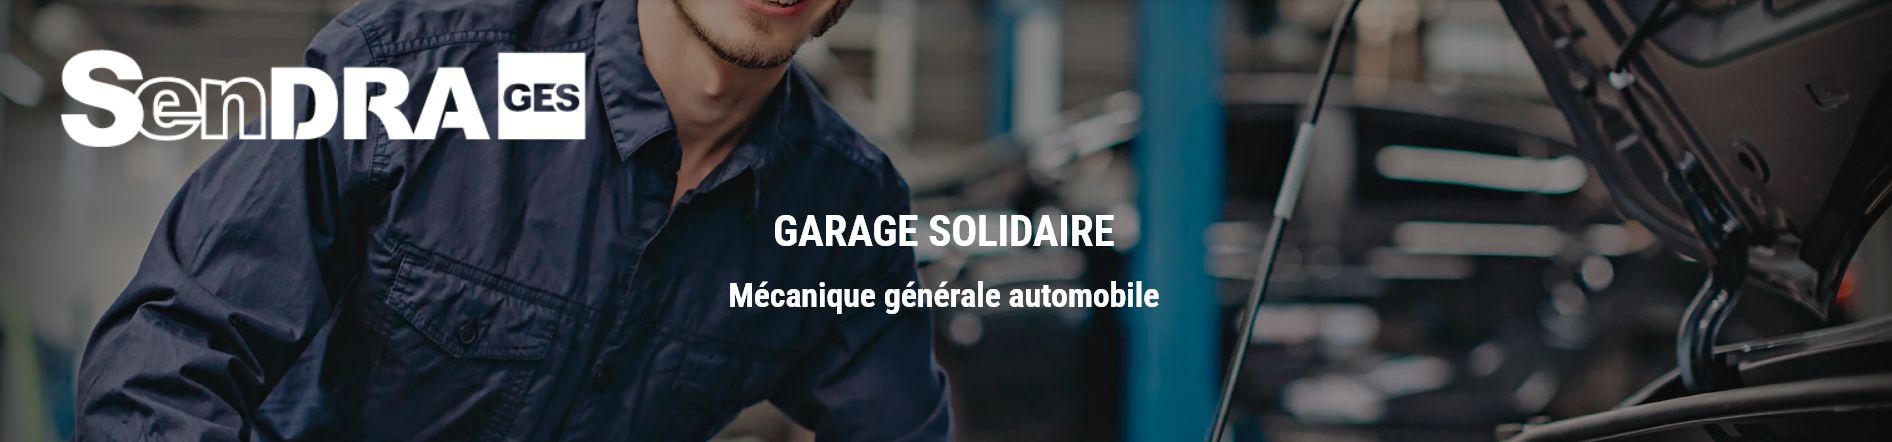 logo, garage solidaire